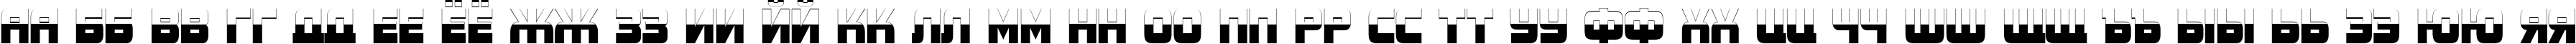 Пример написания русского алфавита шрифтом a_ConceptoTitulNrB&W